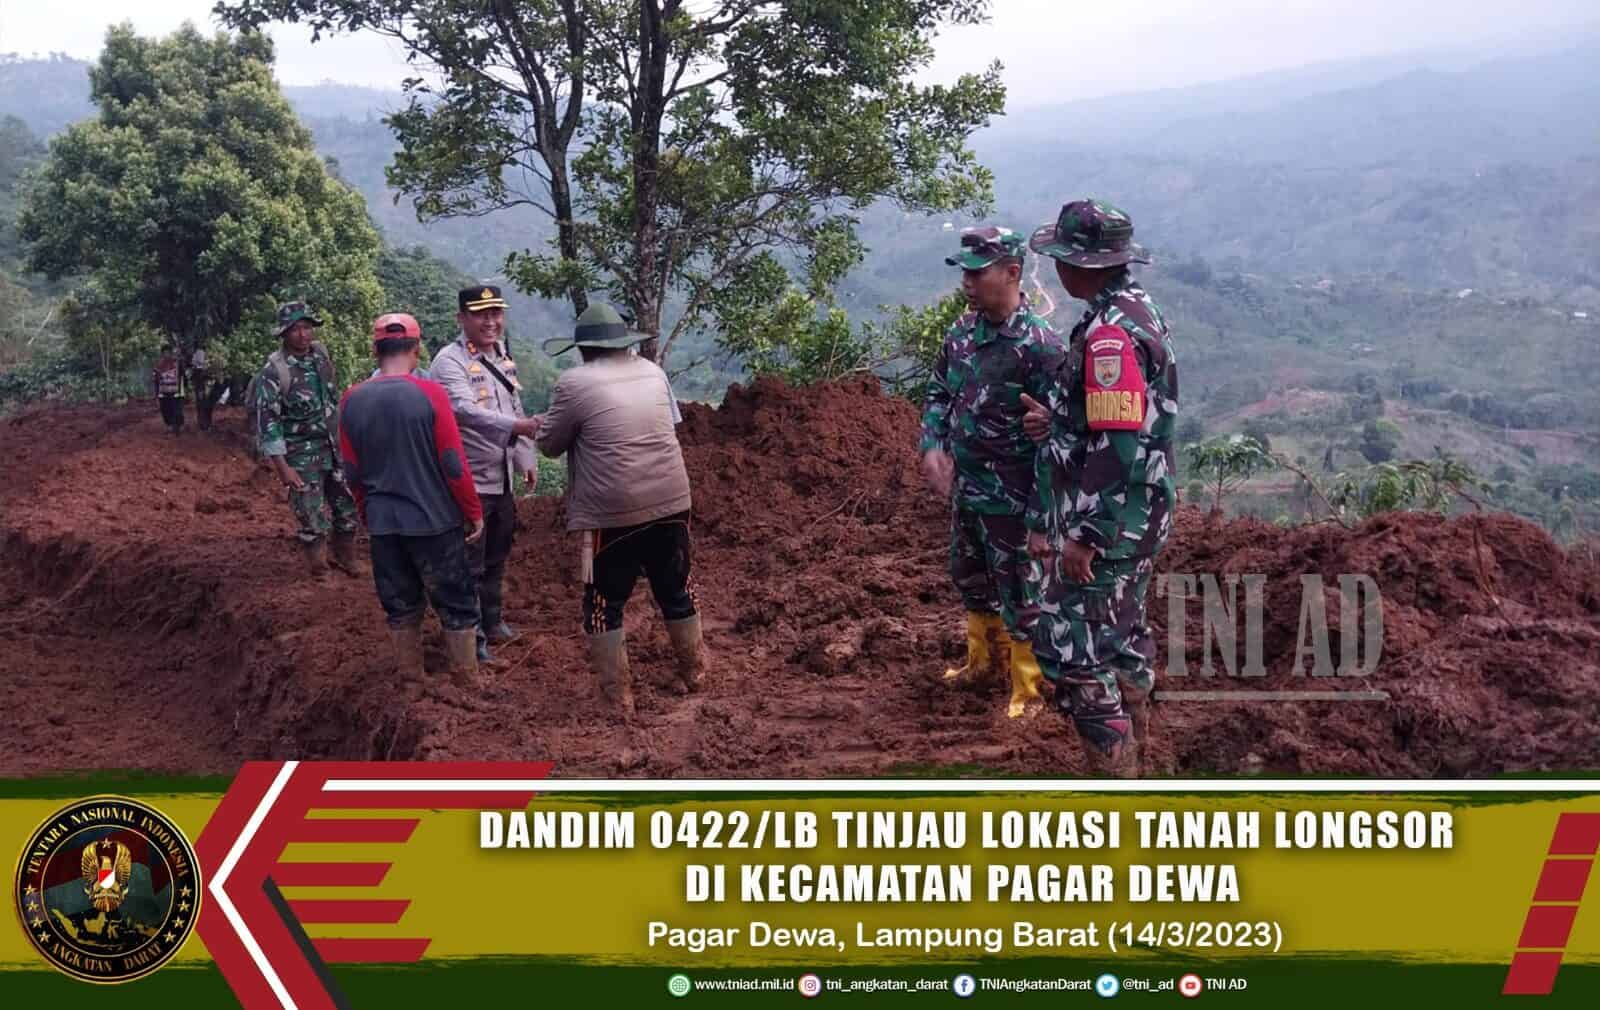 Dandim 0422/LB Tinjau Lokasi Tanah Longsor Di Kecamatan Pagar Dewa